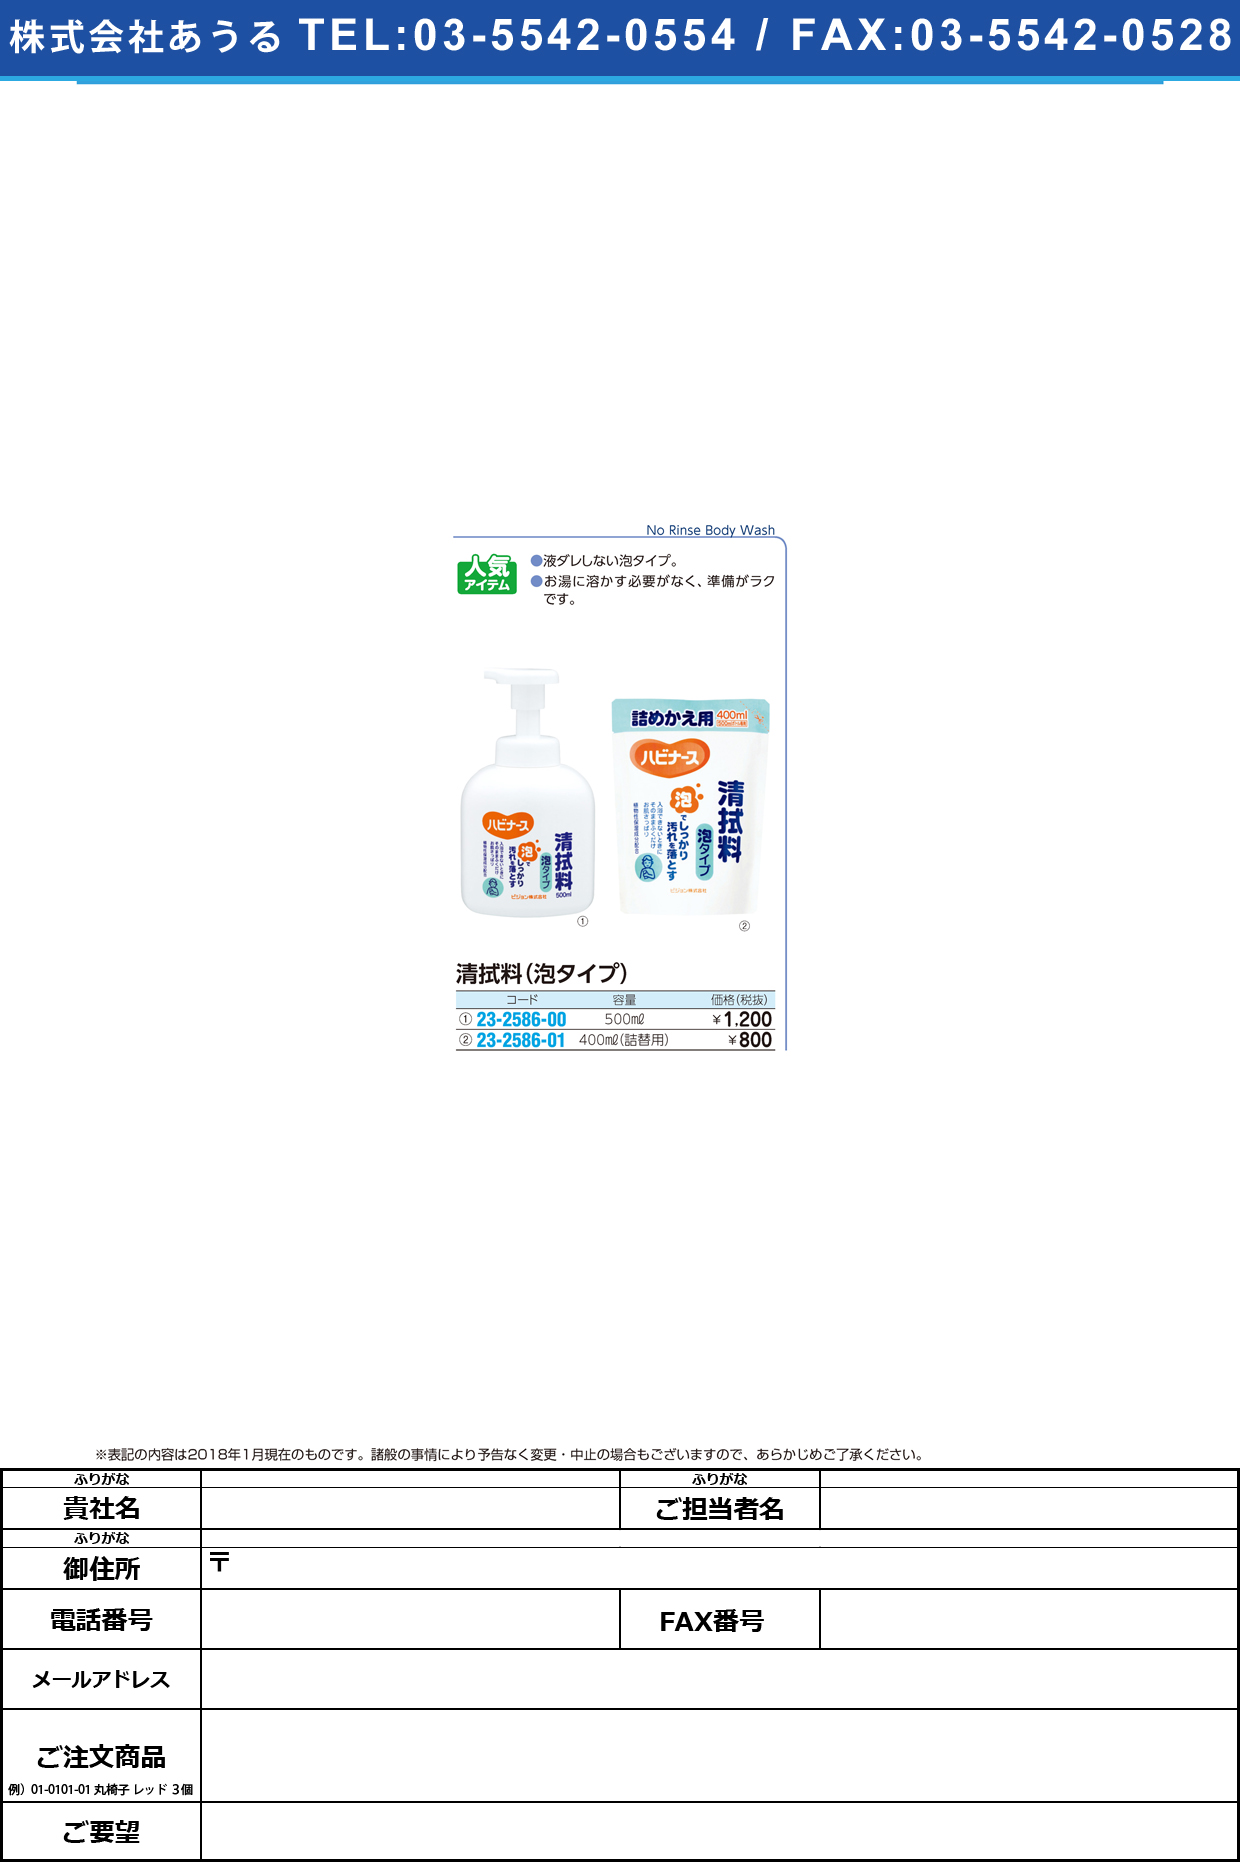 清拭料泡タイプ 10676(500ML) ｾｲｼｷﾘｮｳｱﾜﾀｲﾌﾟ(ピジョンタヒラ)